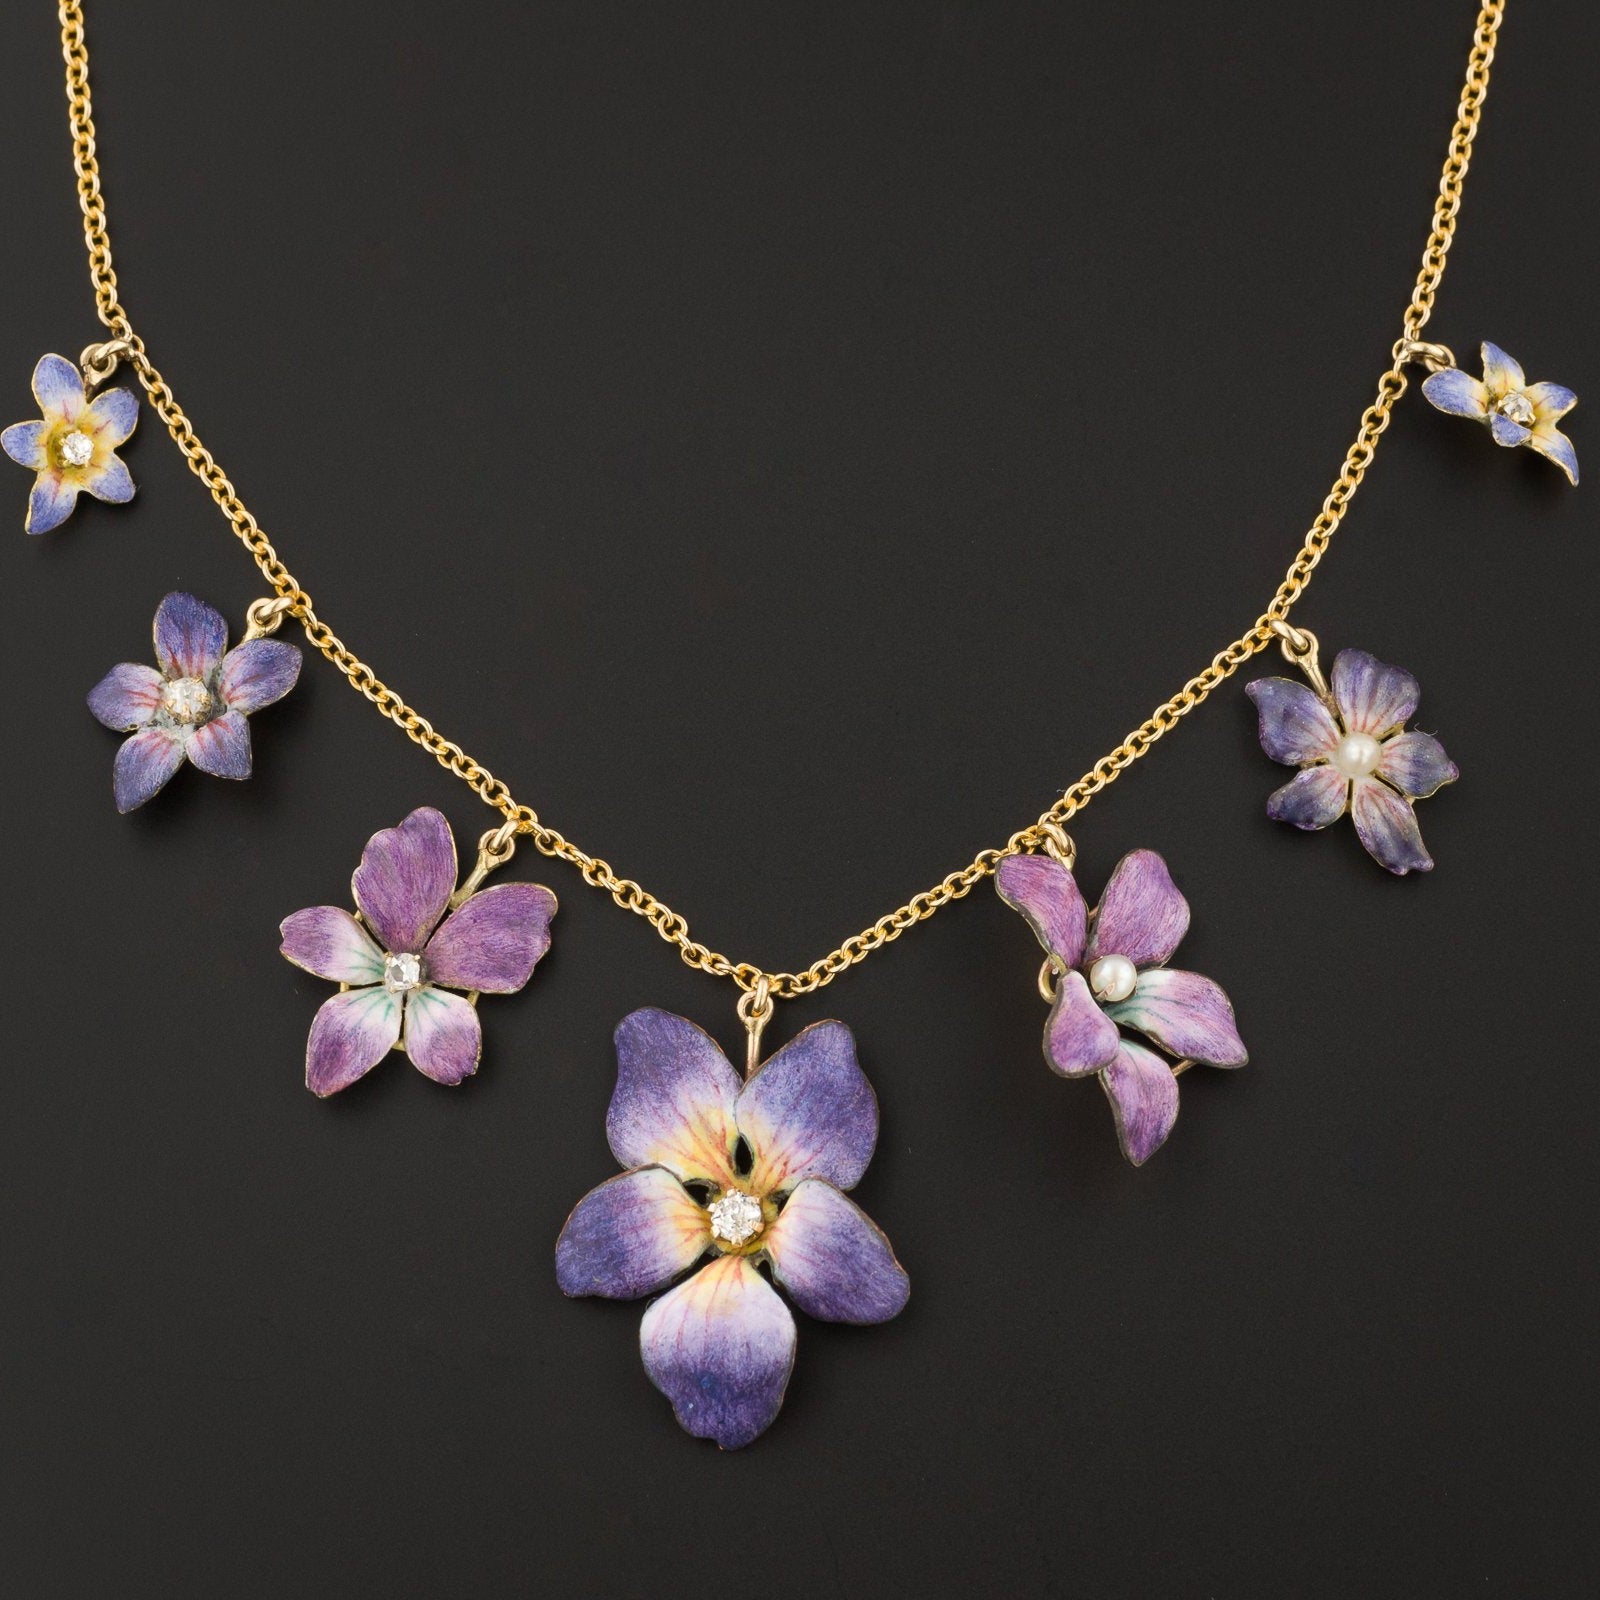 Antique Enamel Flower Necklace | Pin Conversion Necklace | Statement Necklace | One of a Kind Necklace | 14k Gold Necklace